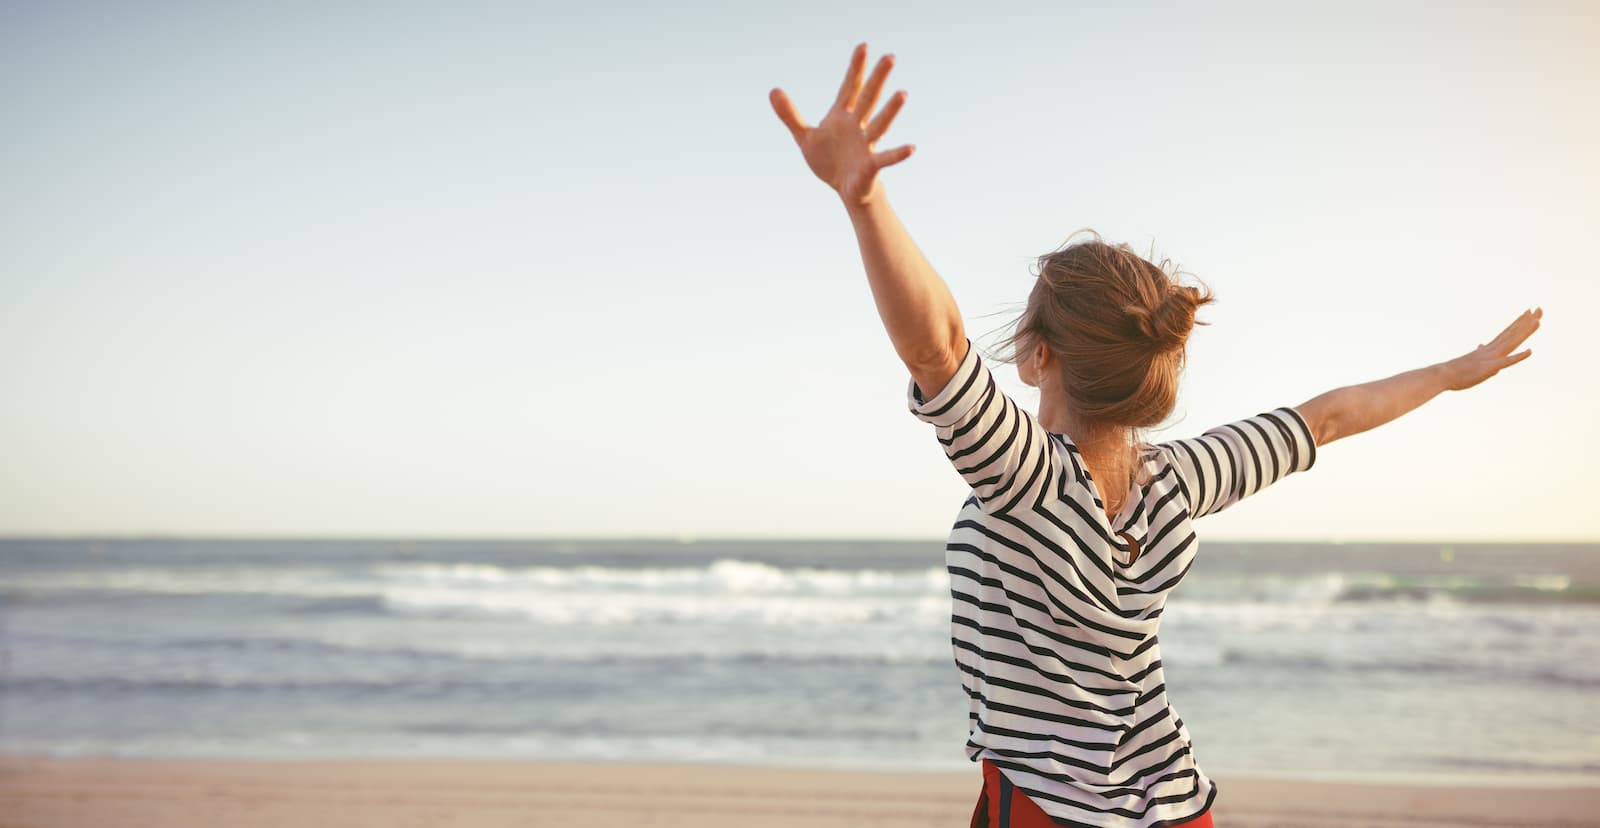 Μια γυναίκα στέκεται στην παραλία με τα χέρια της τεντωμένα